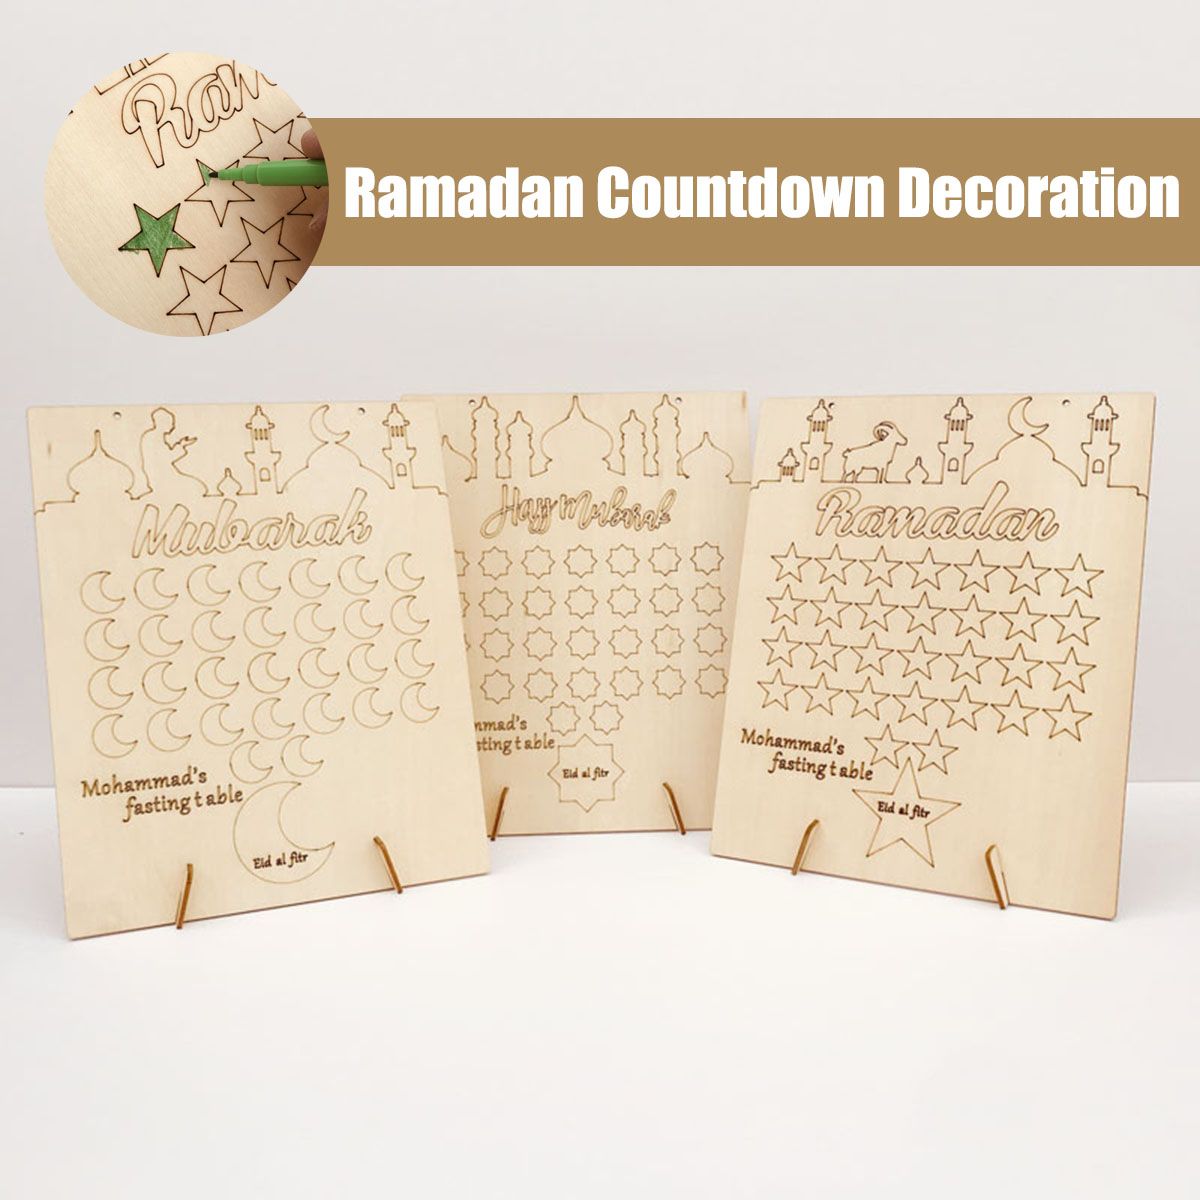 Wooden-Ramadan-Countdown-Calendar-DIY-Graffiti-EID-Mubarak-Decorations-1669473